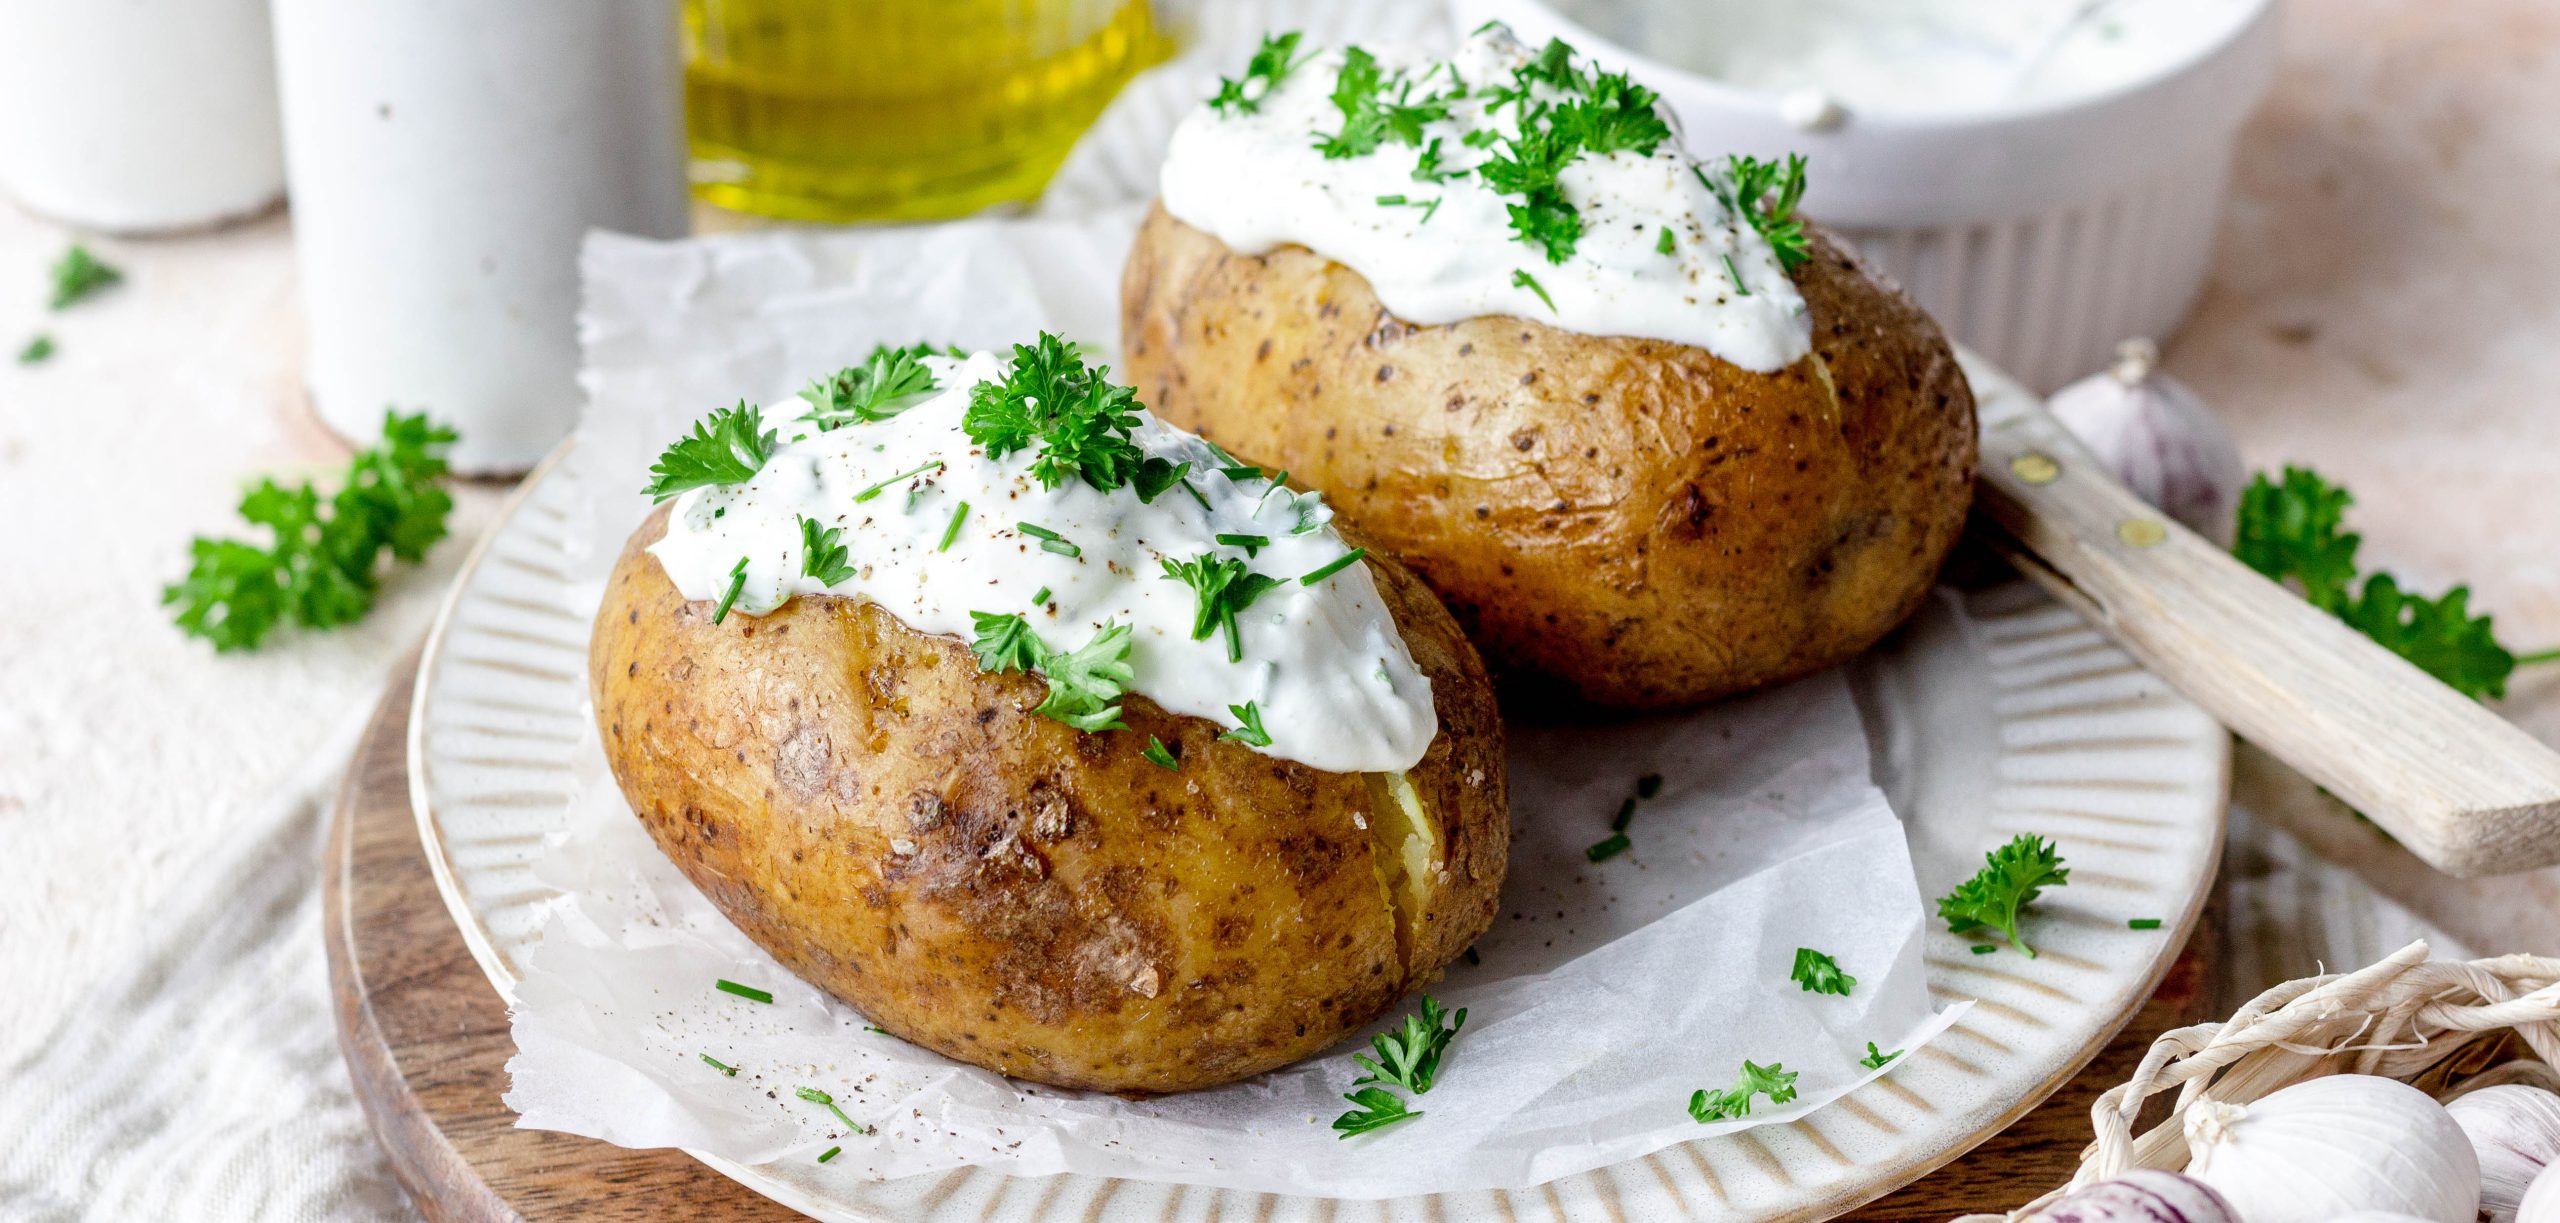 Gepofte aardappels met zure room